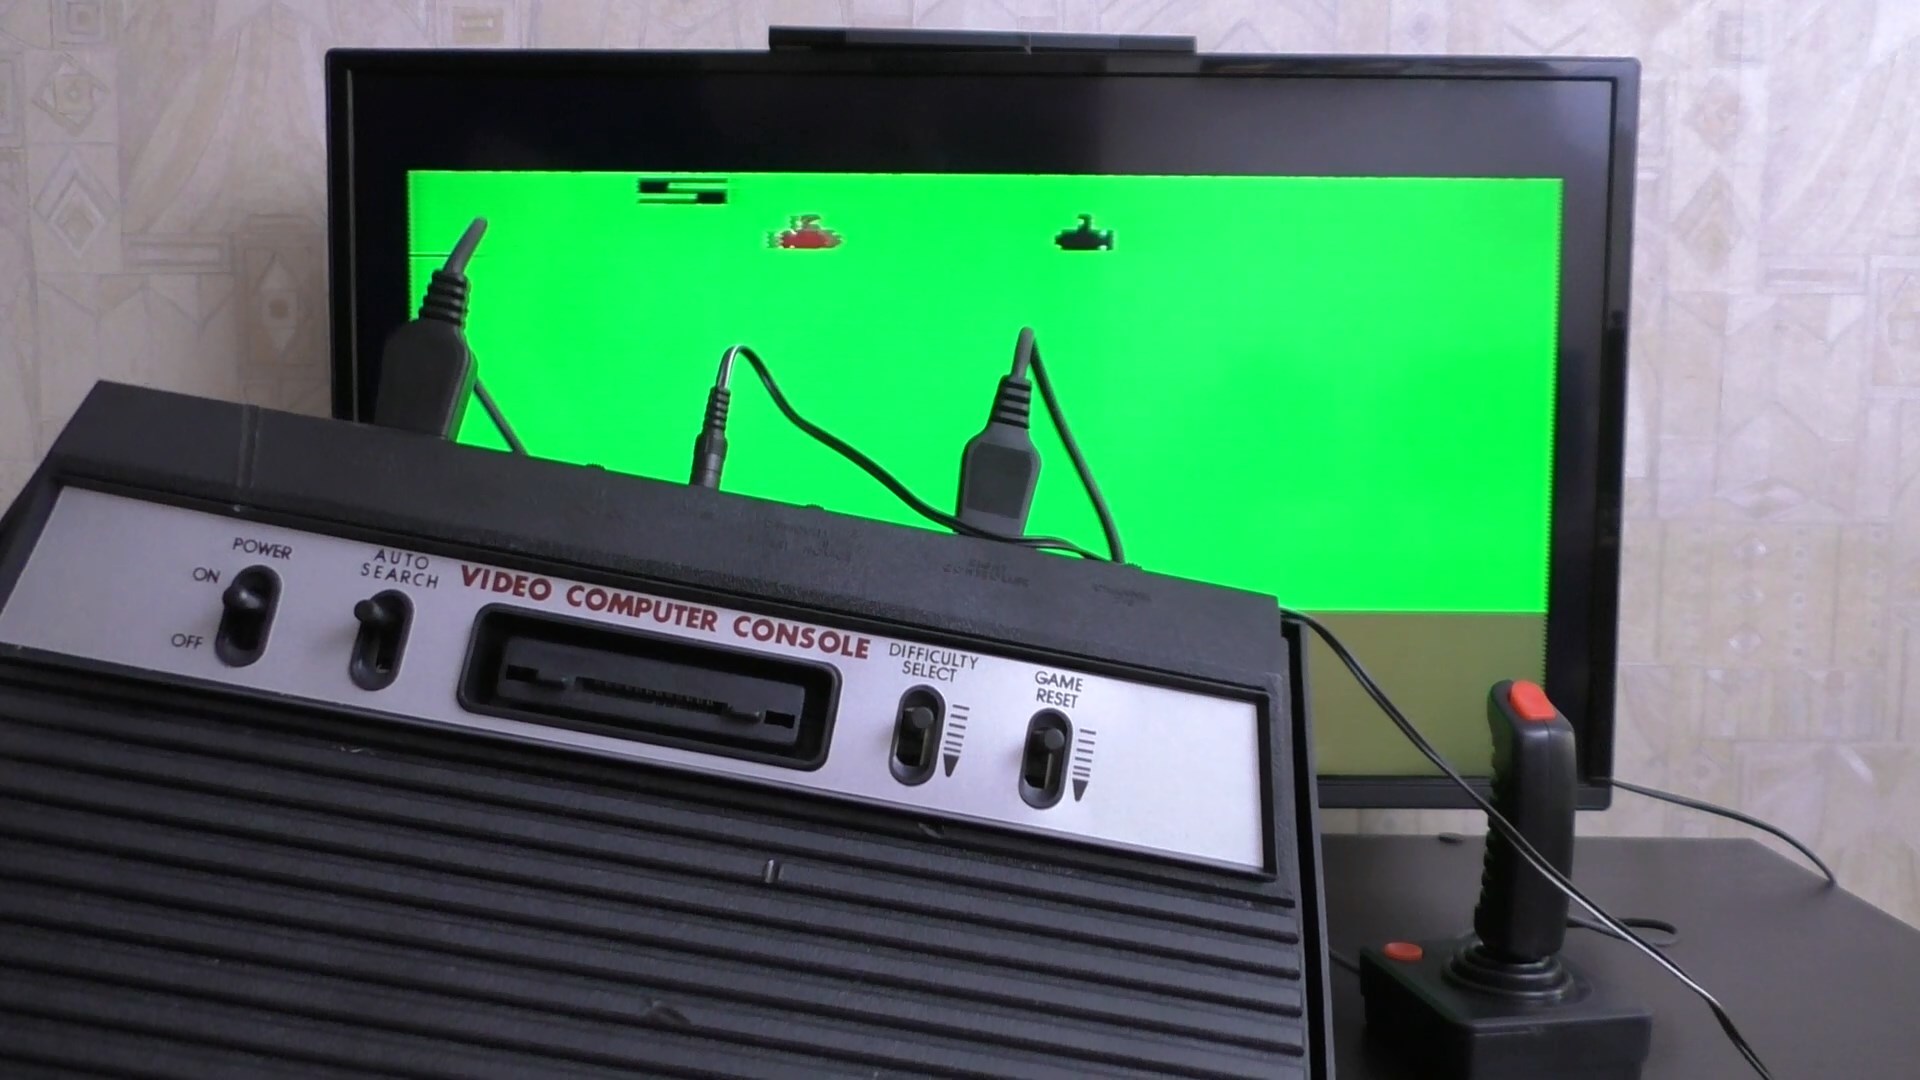 Rambo TV Games (Atari 2600) [статья с кучей фото и капелькой видео] - 36